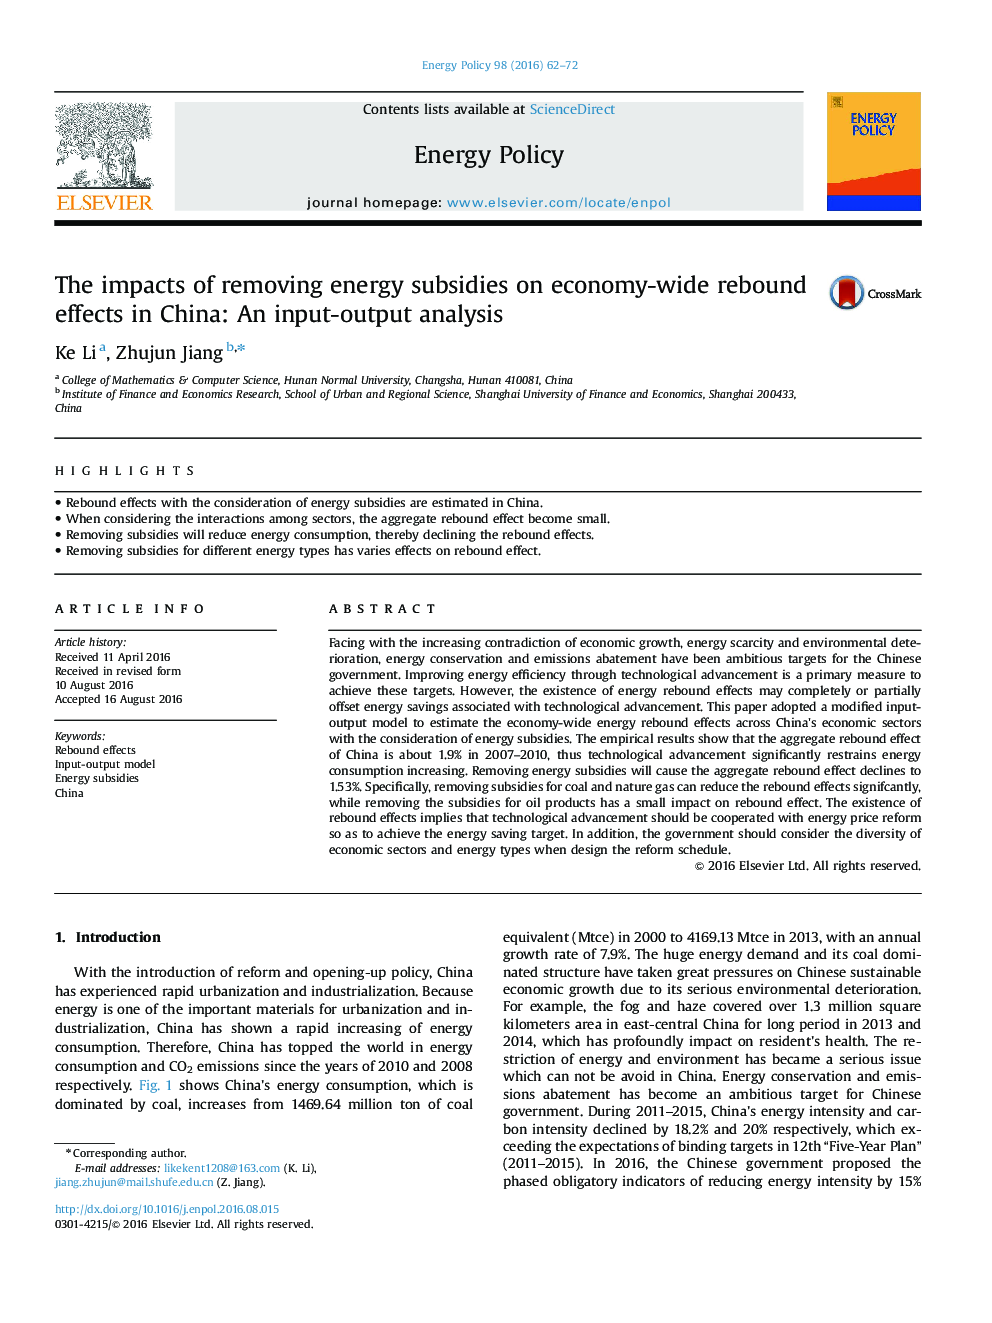 اثرات حذف یارانه های انرژی بر اثرات برگشت اقتصادی در چین: تجزیه و تحلیل ورودی / خروجی 